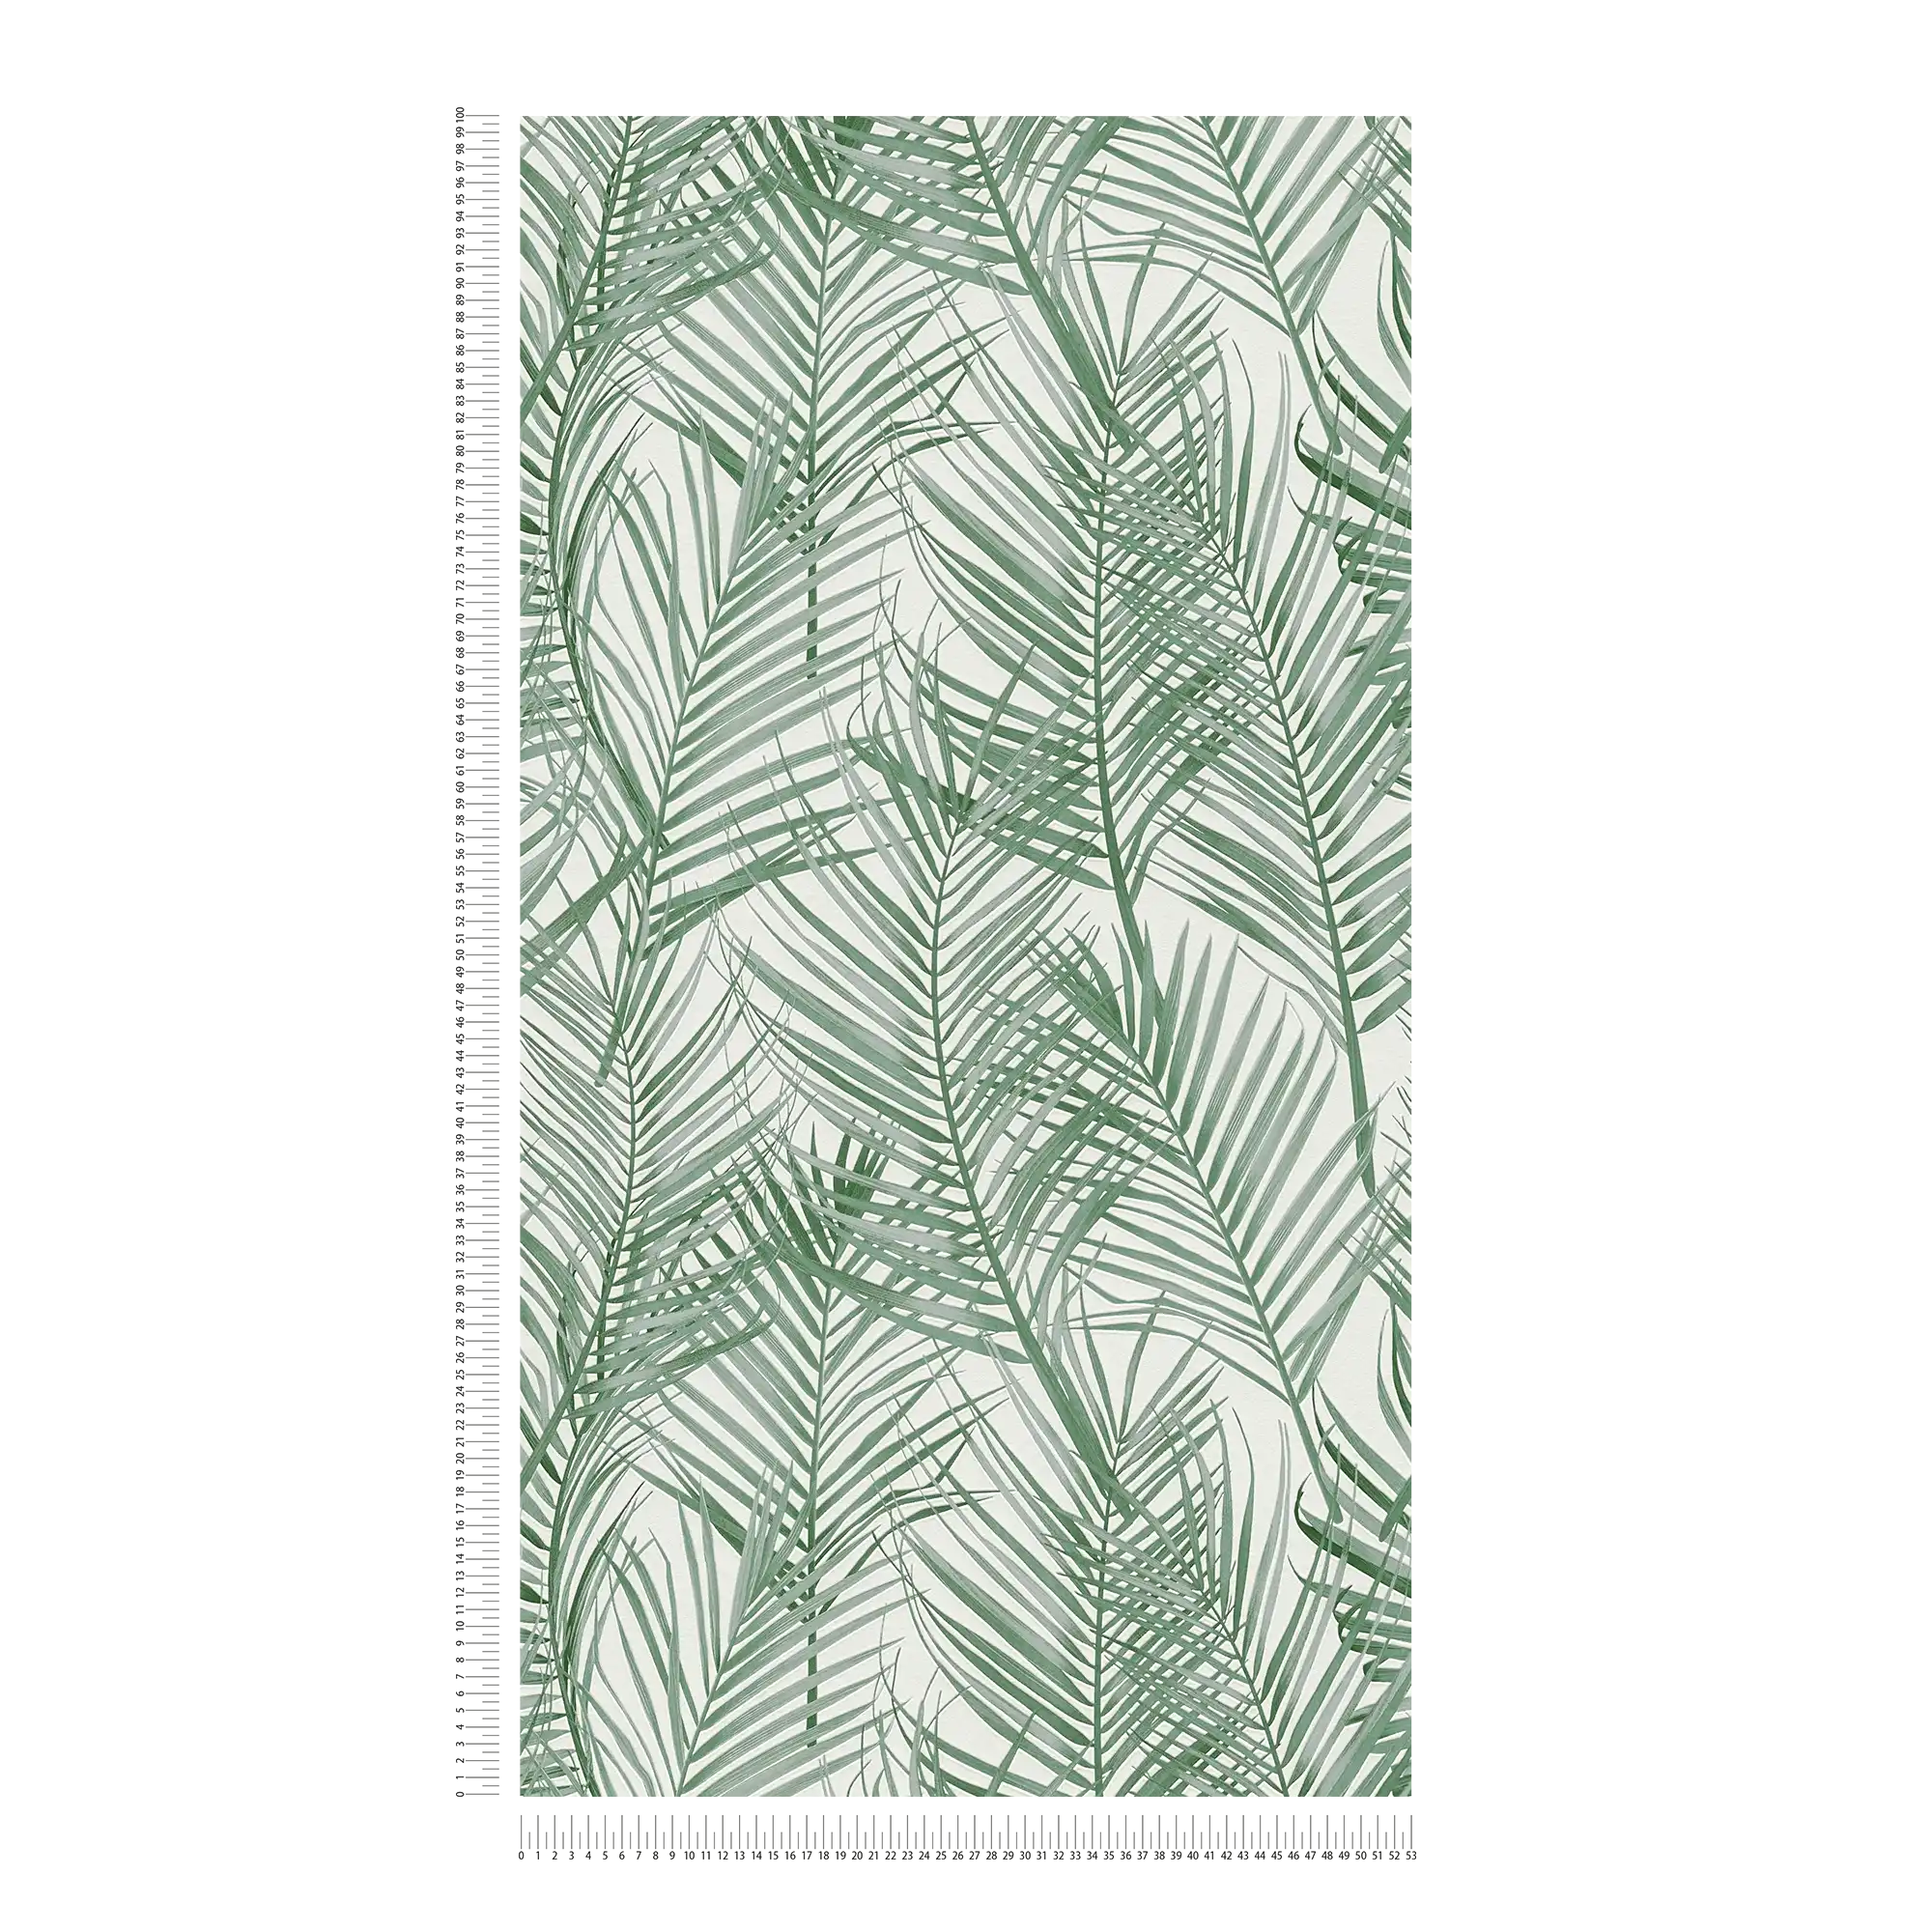             Carta da parati in tessuto non tessuto con motivo a grandi palme - verde, bianco
        